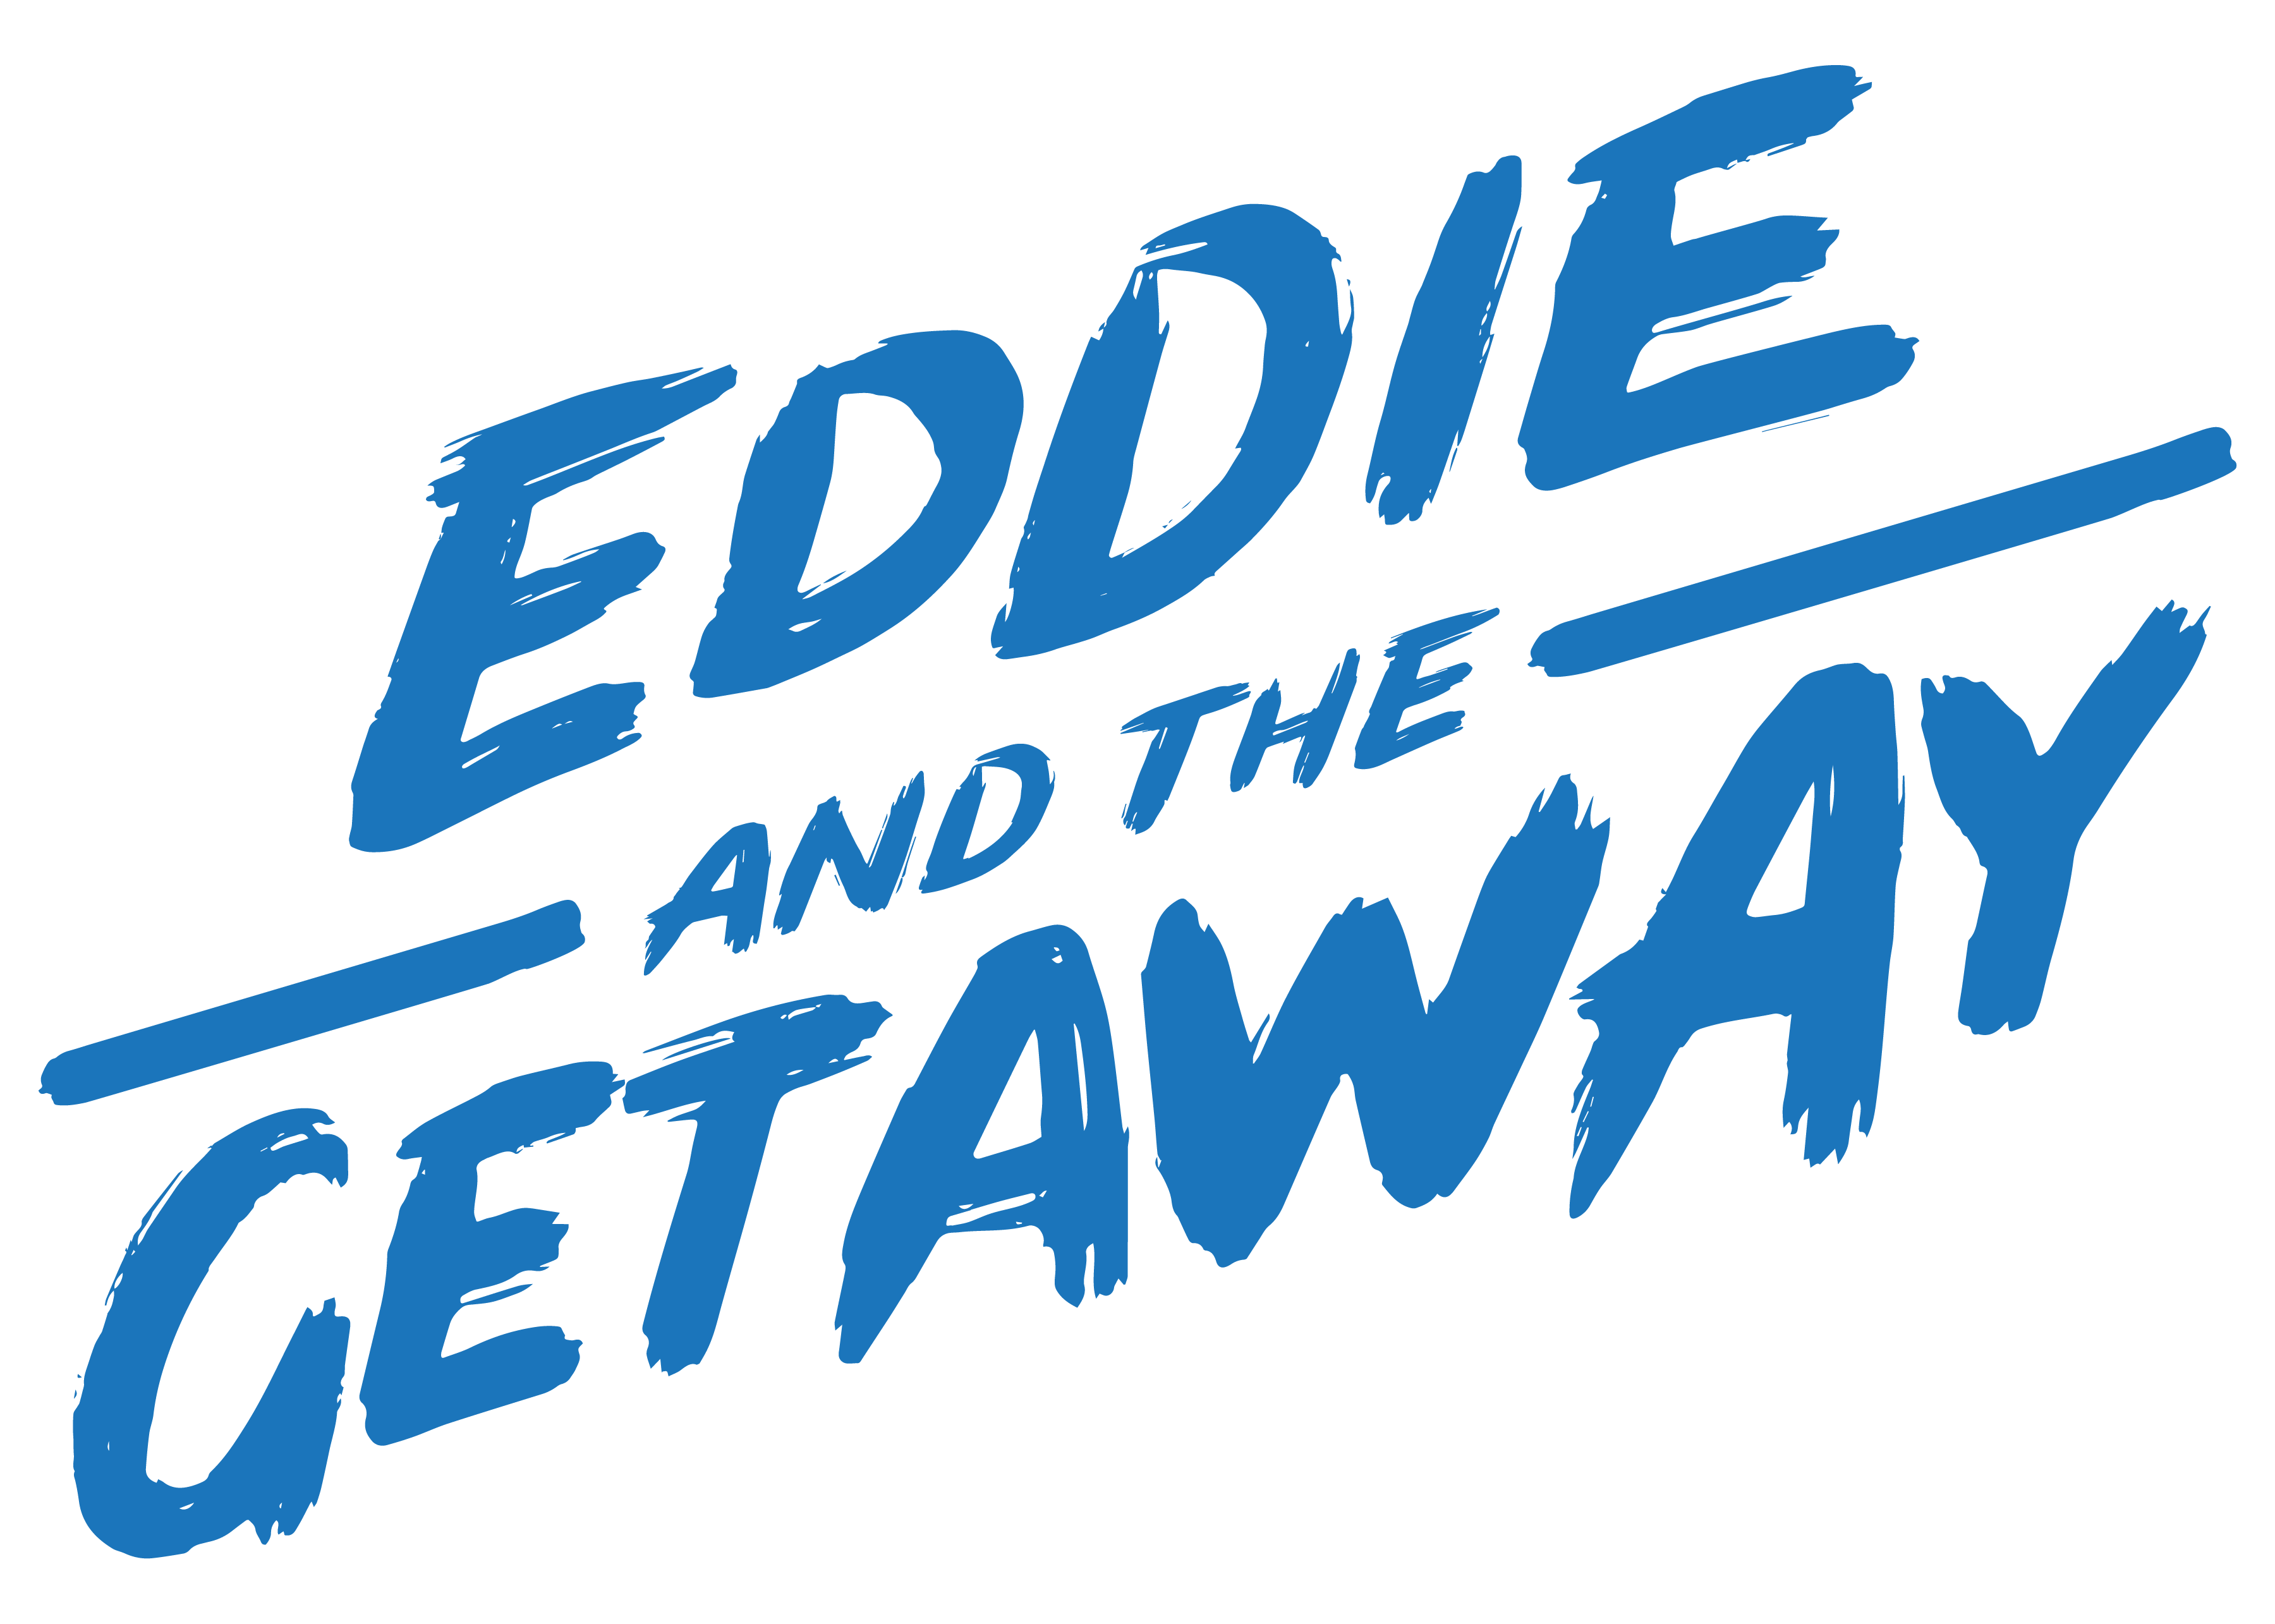 Eddie and The Getaway